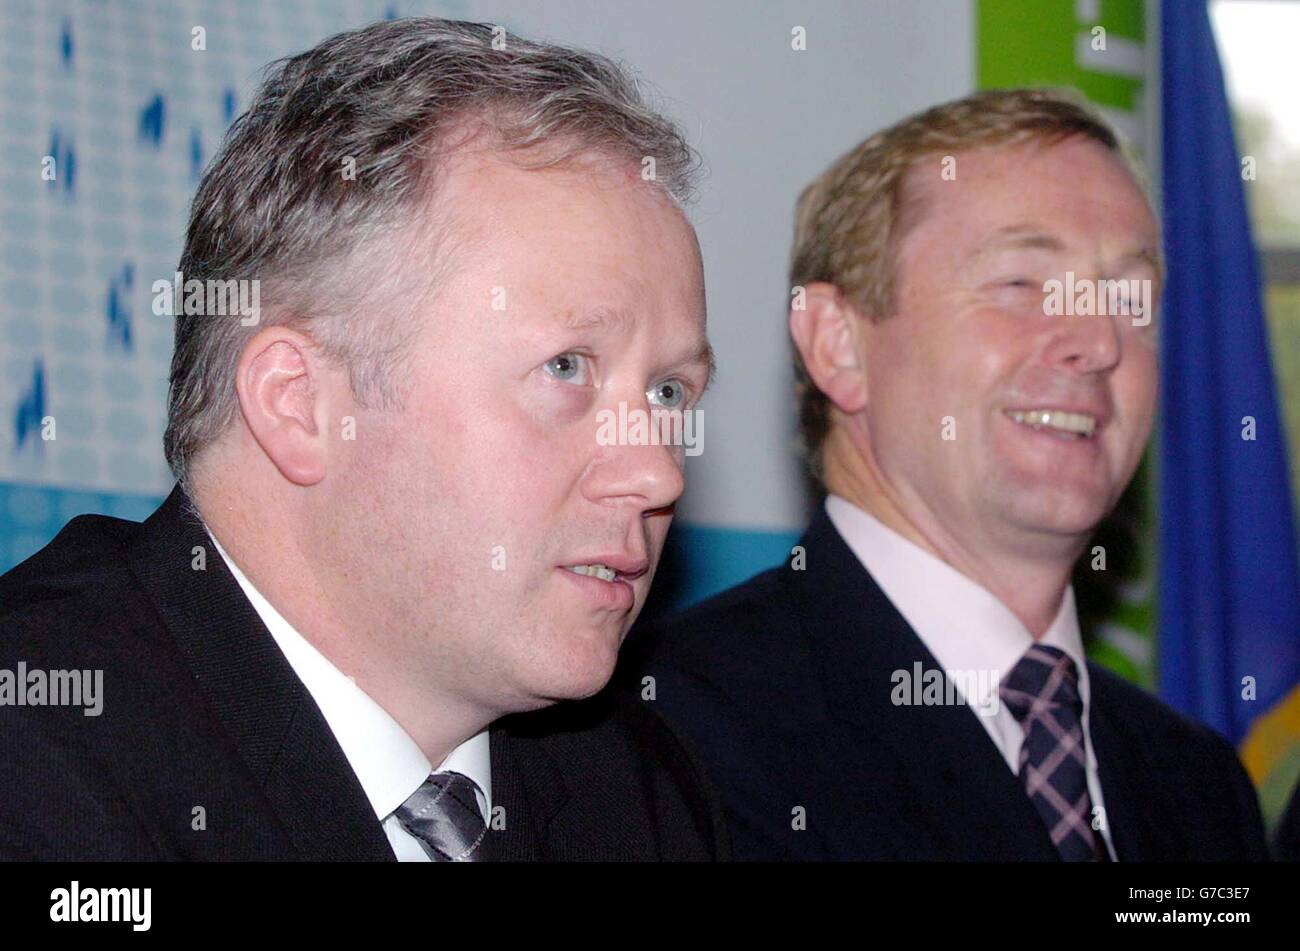 Wexford-Stellvertreter Dr. Liam Twomey (L) wird von Fine Gael-Chef Enda Kenny nach seiner Entscheidung, sich der Partei von Herrn Kenny anzuschließen, bei einer Pressekonferenz in einem Hotel in Dublin gratuliert. Der ehemalige unabhängige - der im Mai 2002 gewählt wurde - sagte, er dachte, dass er Fine Gael beitreten würde, er wäre ein besserer Vertreter der Menschen von Wexford. Stockfoto